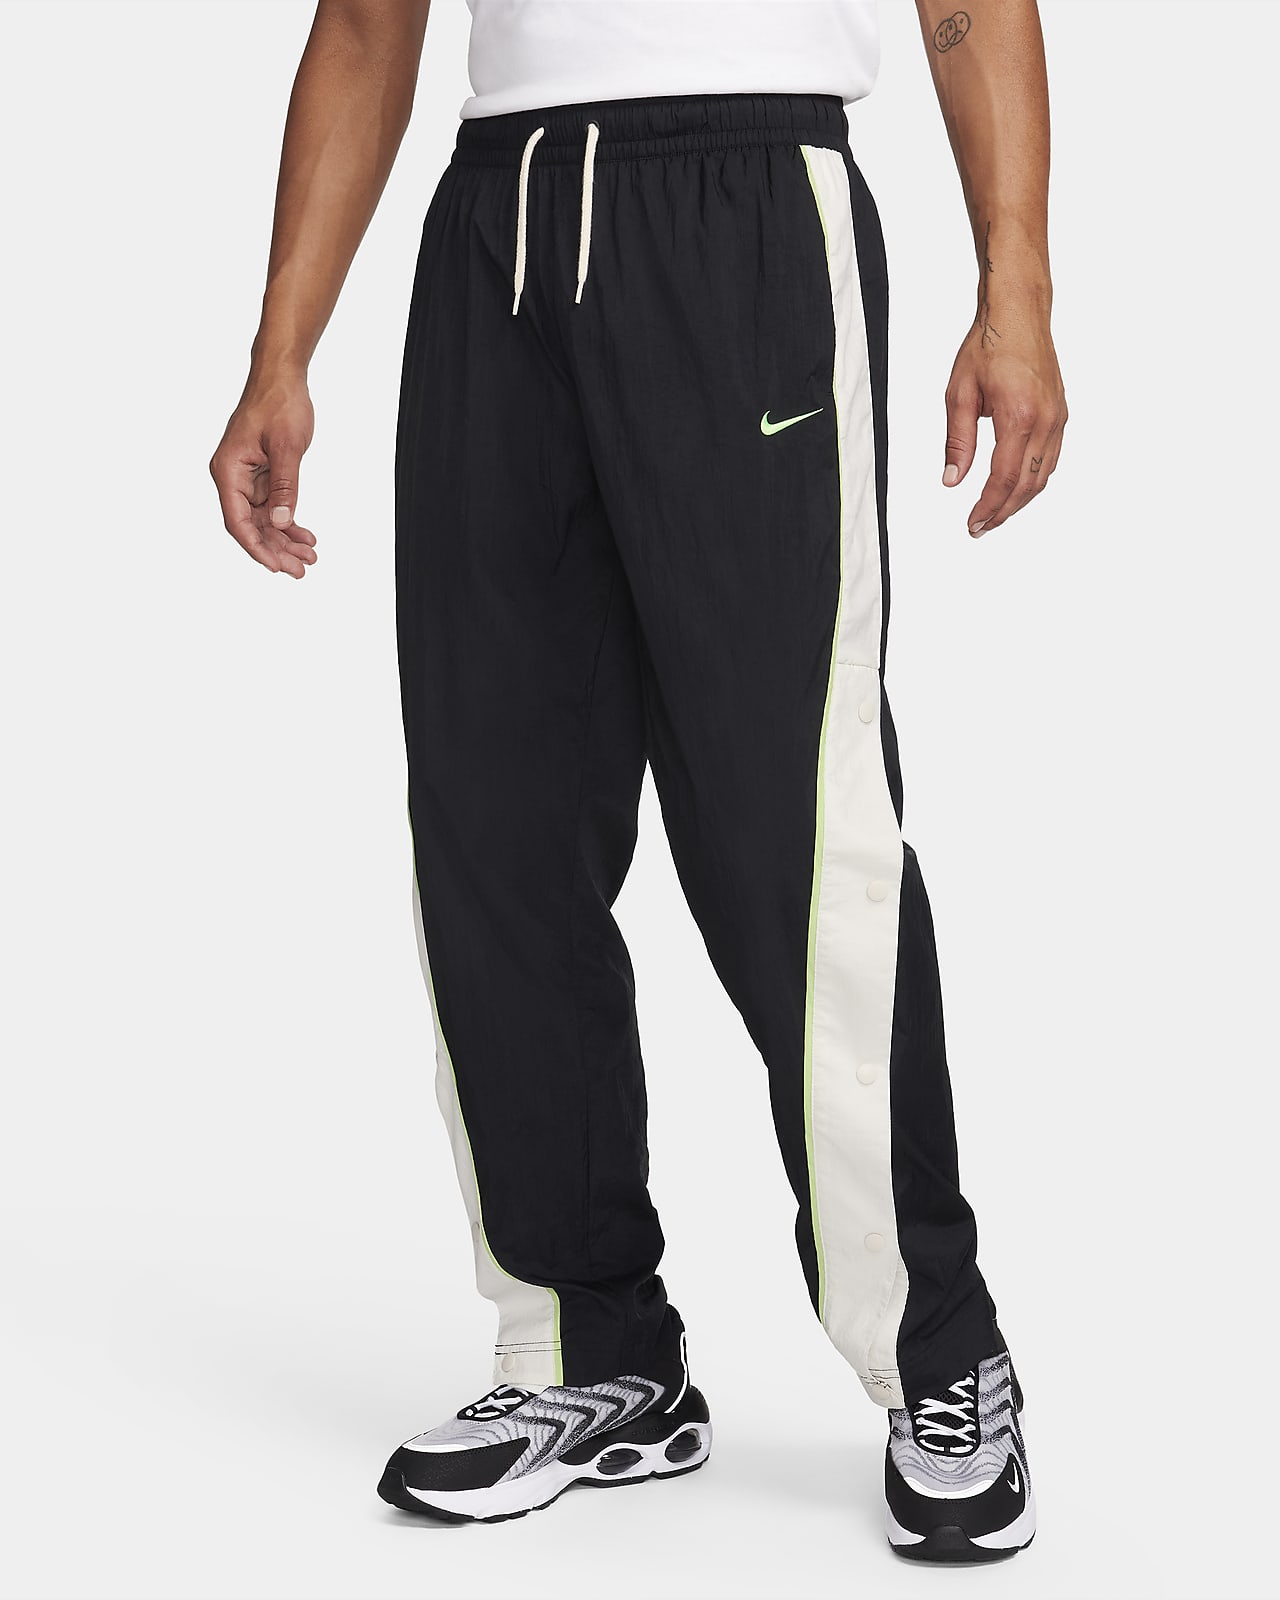 Pantaloni in tessuto da basket Nike - Uomo